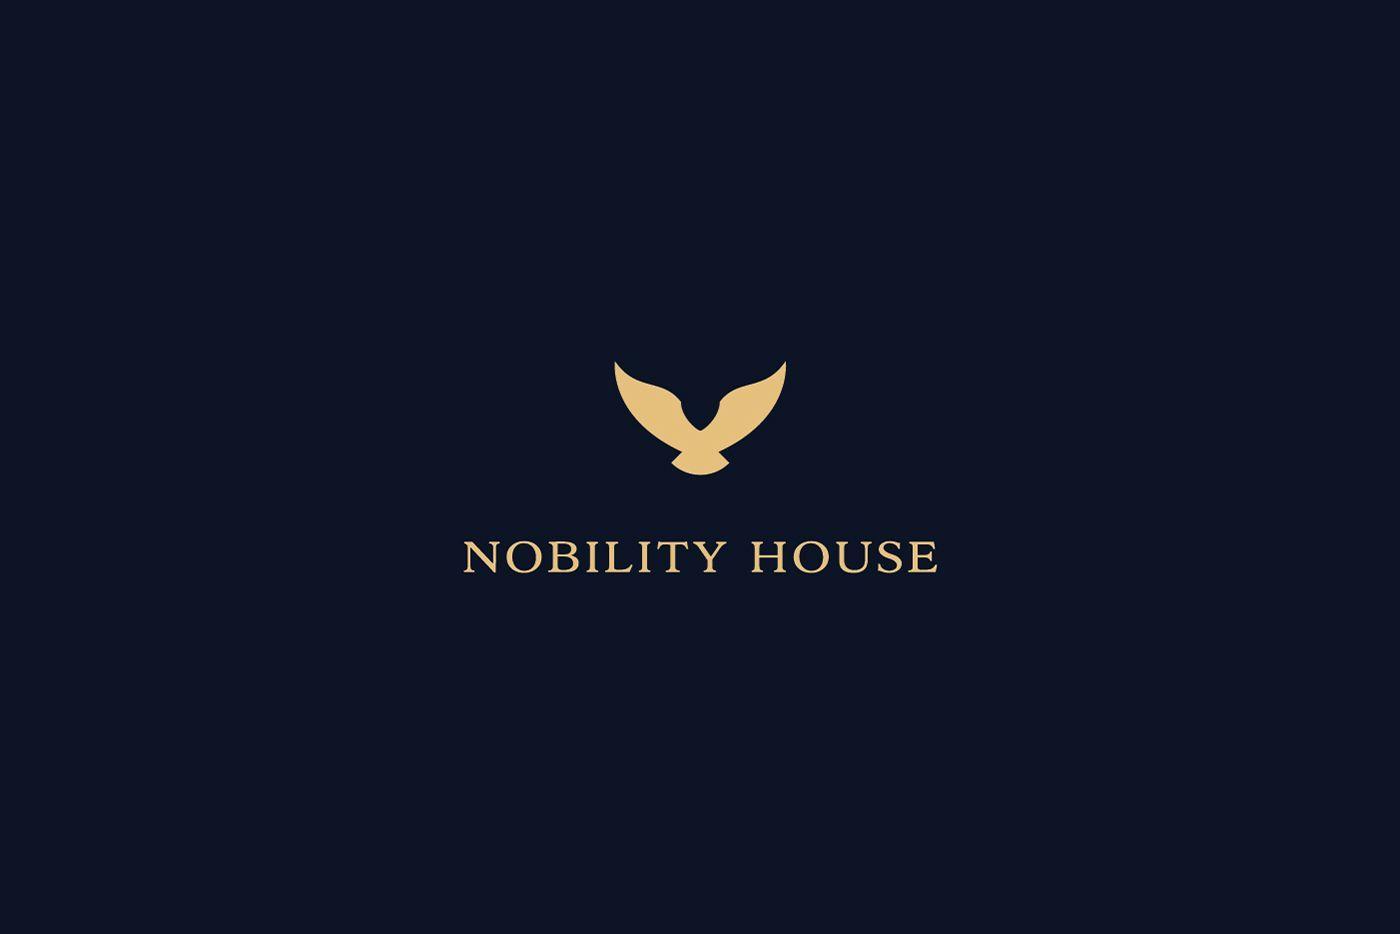 Nobility Logo - Nobility House. Logo Design. Home design plans, Logos